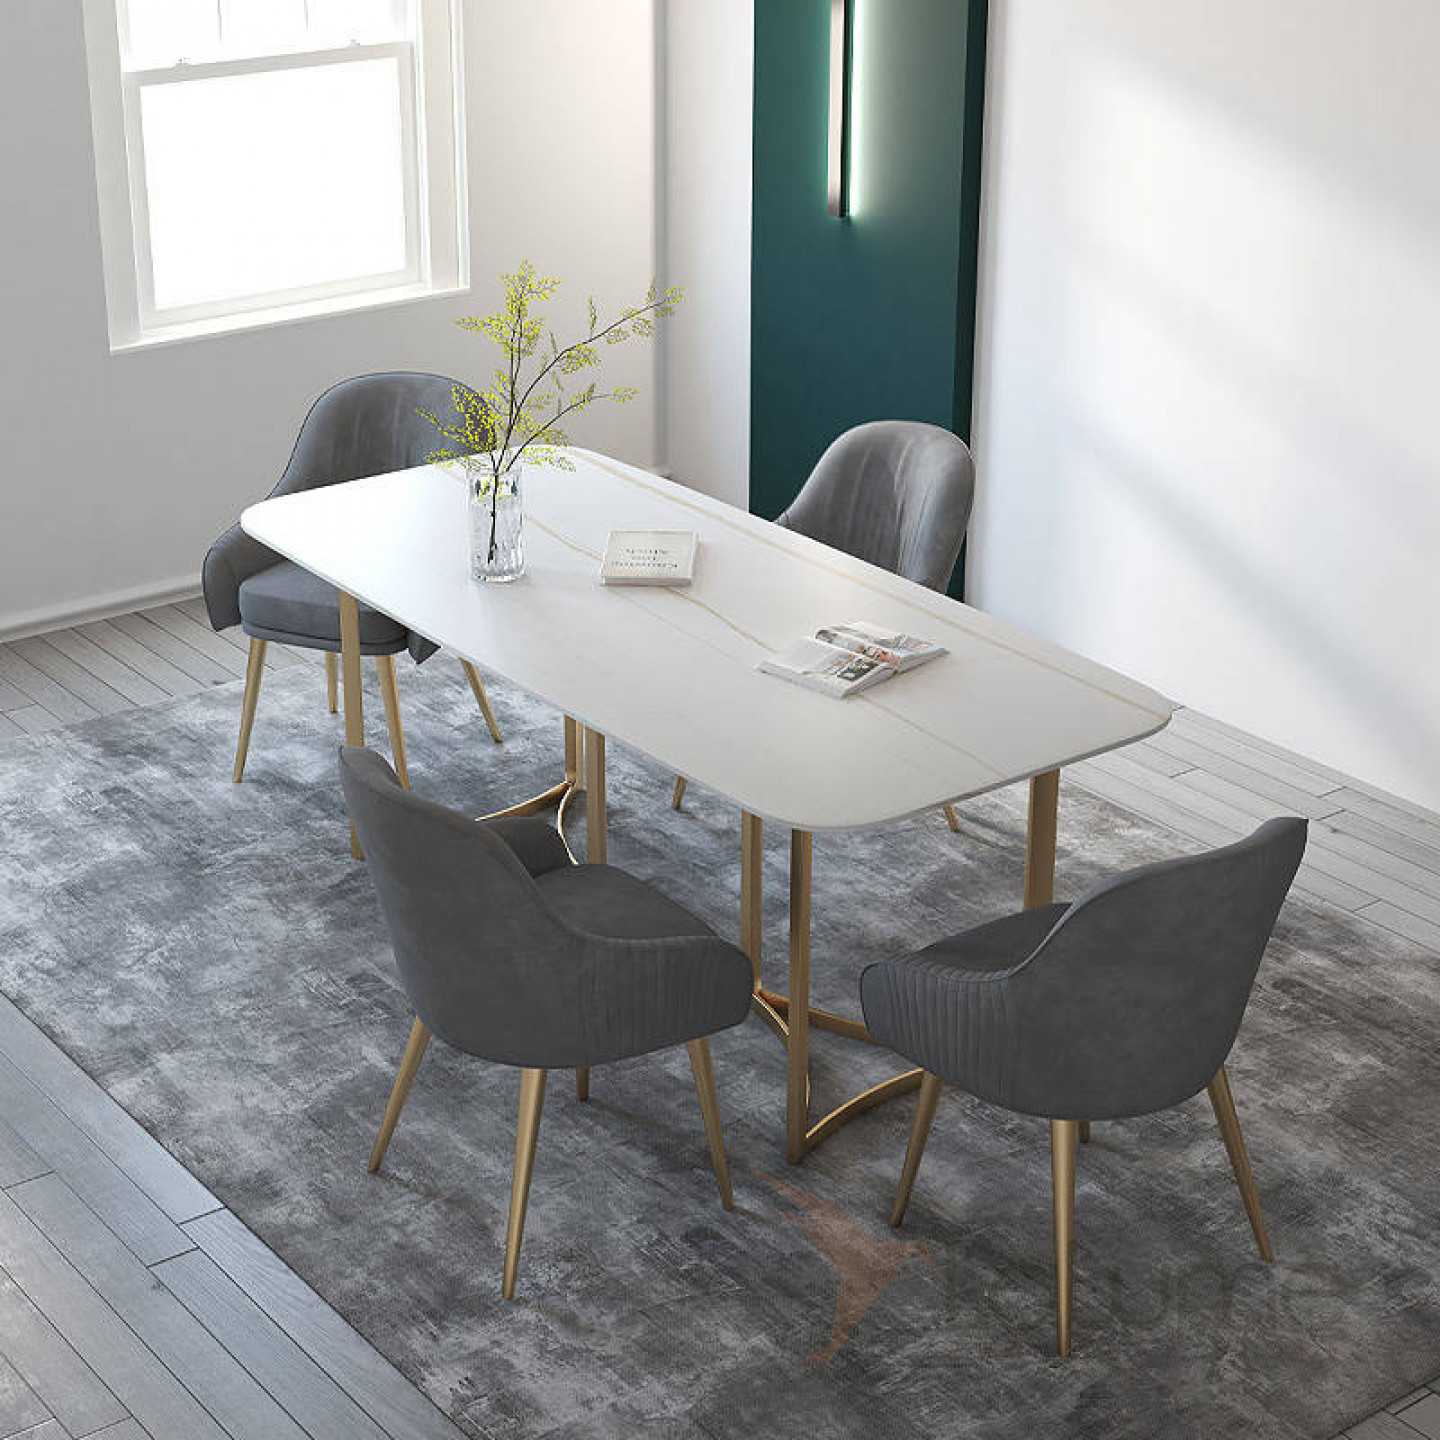 Мебель для столовой, как подобрать комплект, советы специалистов